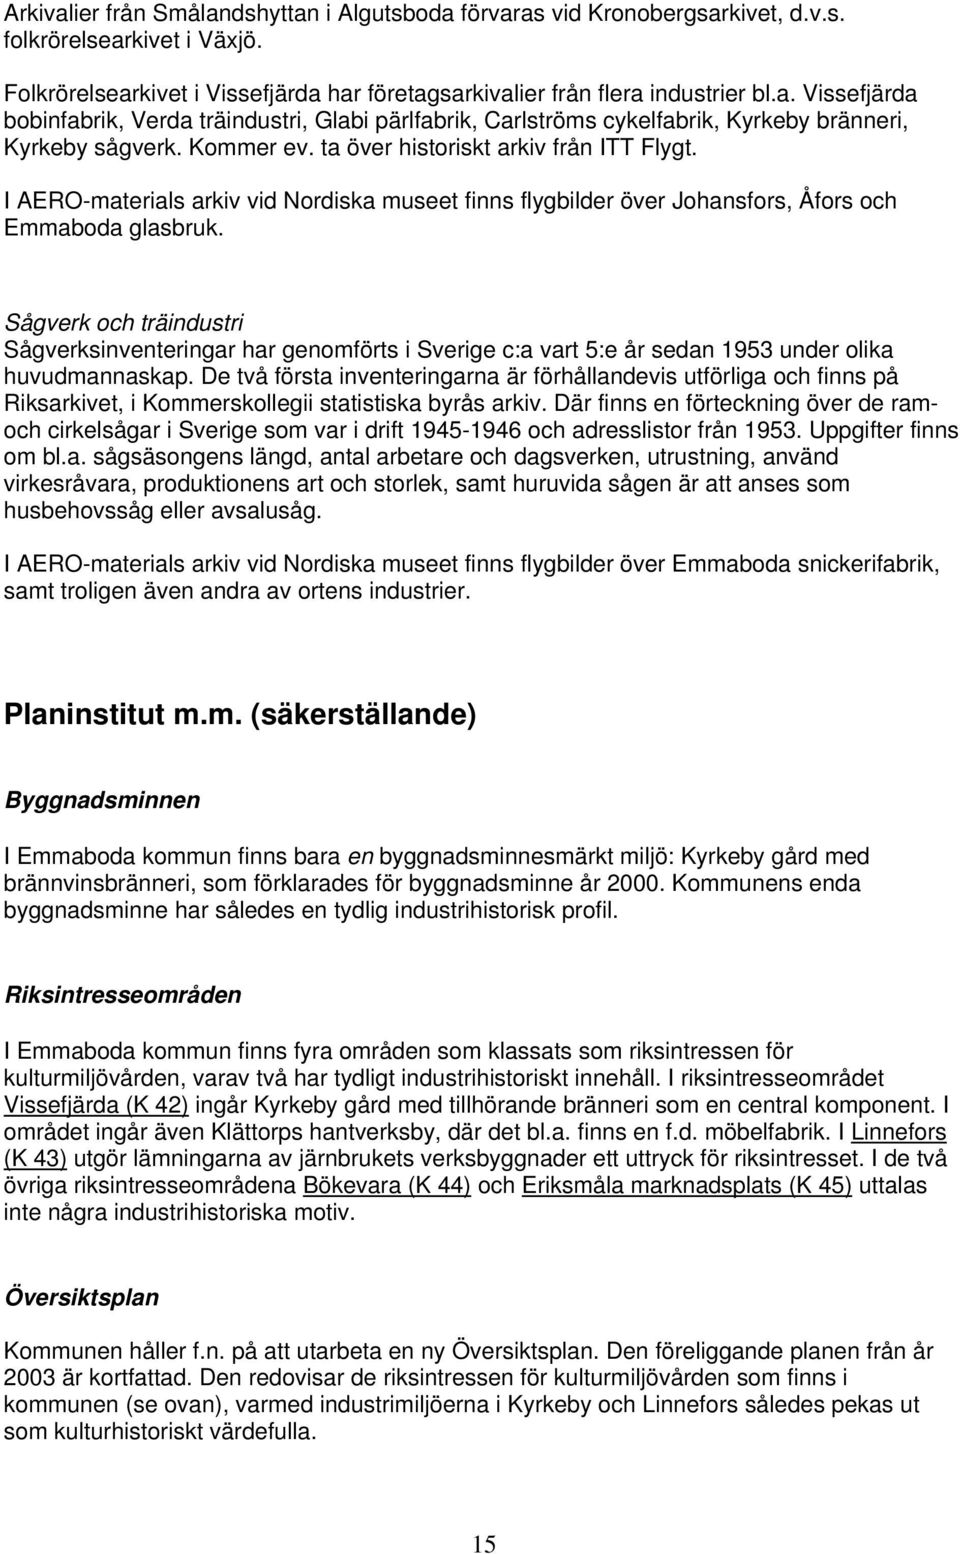 Sågverk och träindustri Sågverksinventeringar har genomförts i Sverige c:a vart 5:e år sedan 1953 under olika huvudmannaskap.